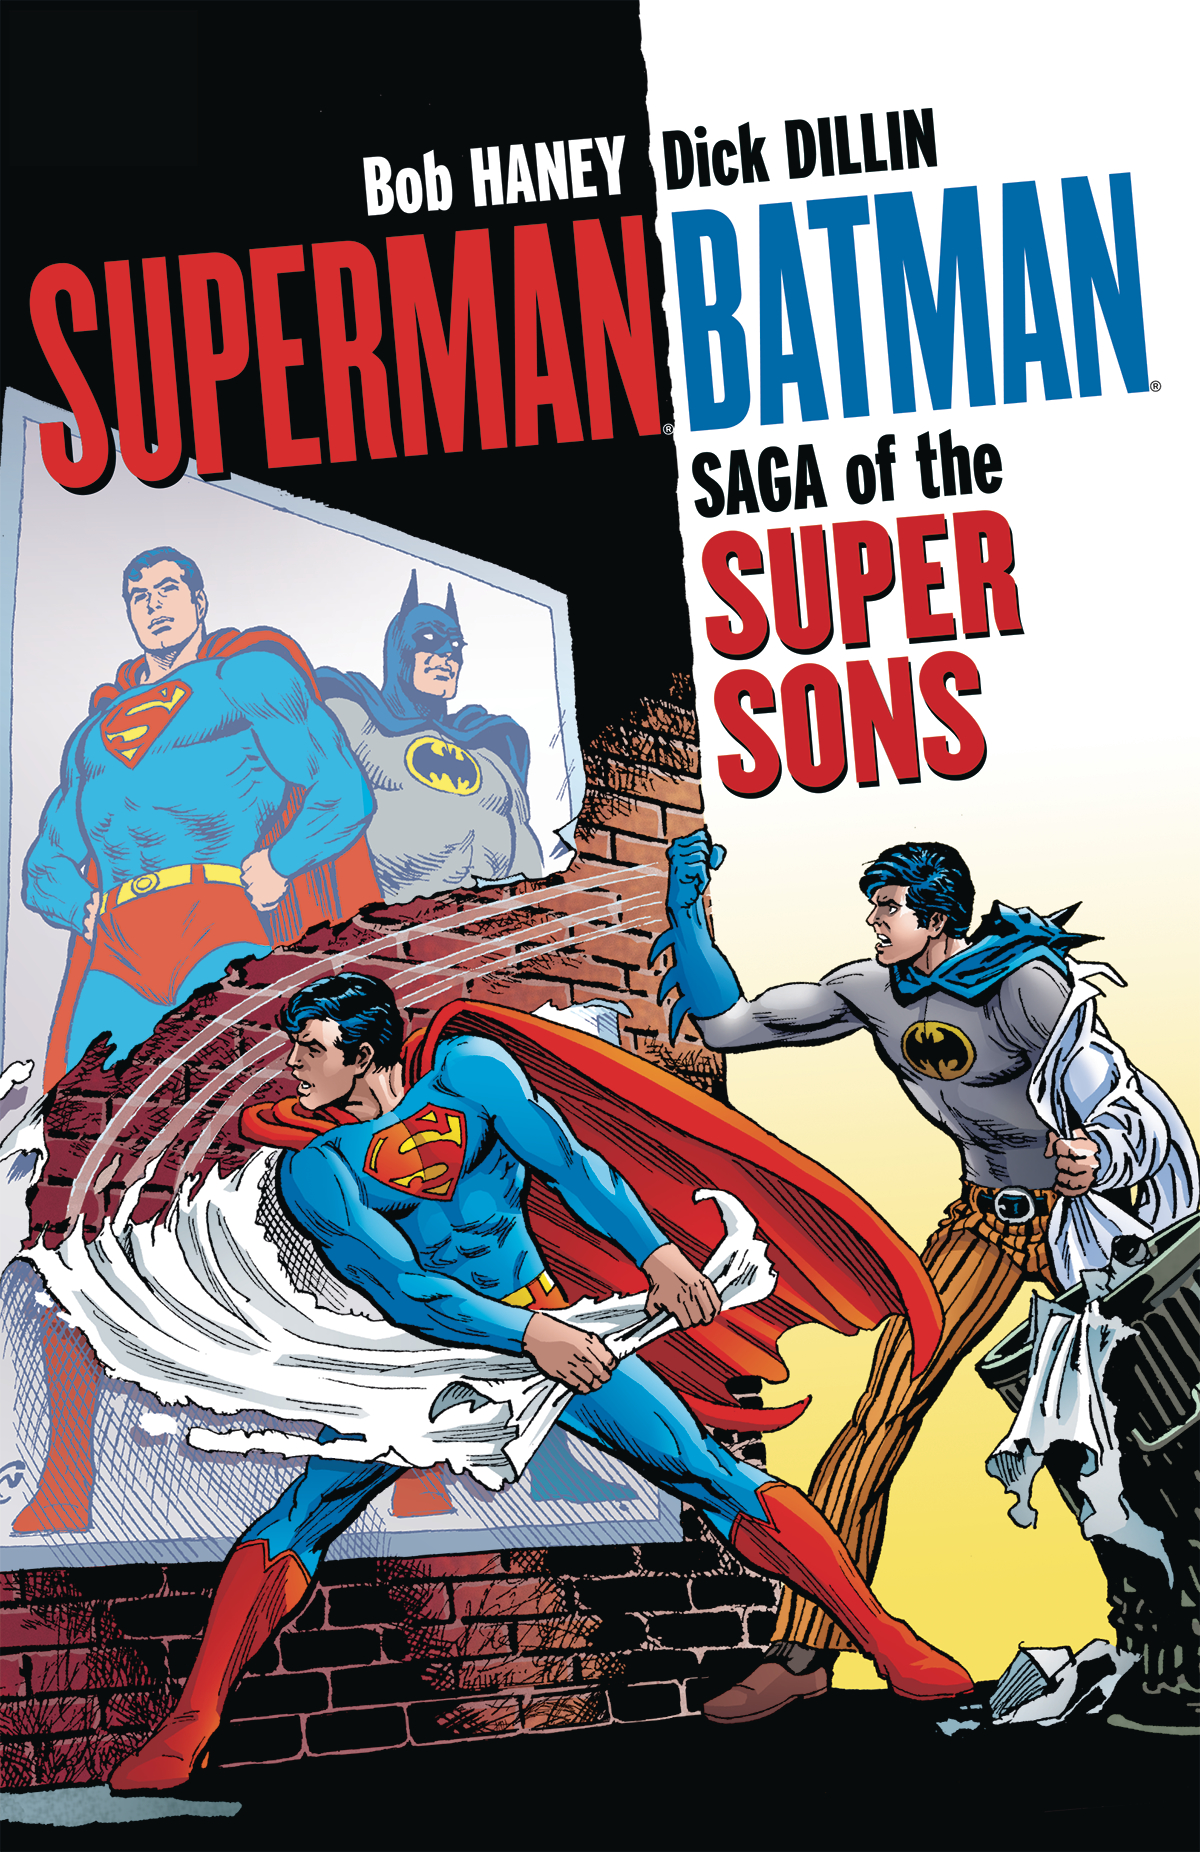 OCT160311 - SUPERMAN BATMAN SAGA OF THE SUPER SONS TP NEW ED (RES) -  Previews World